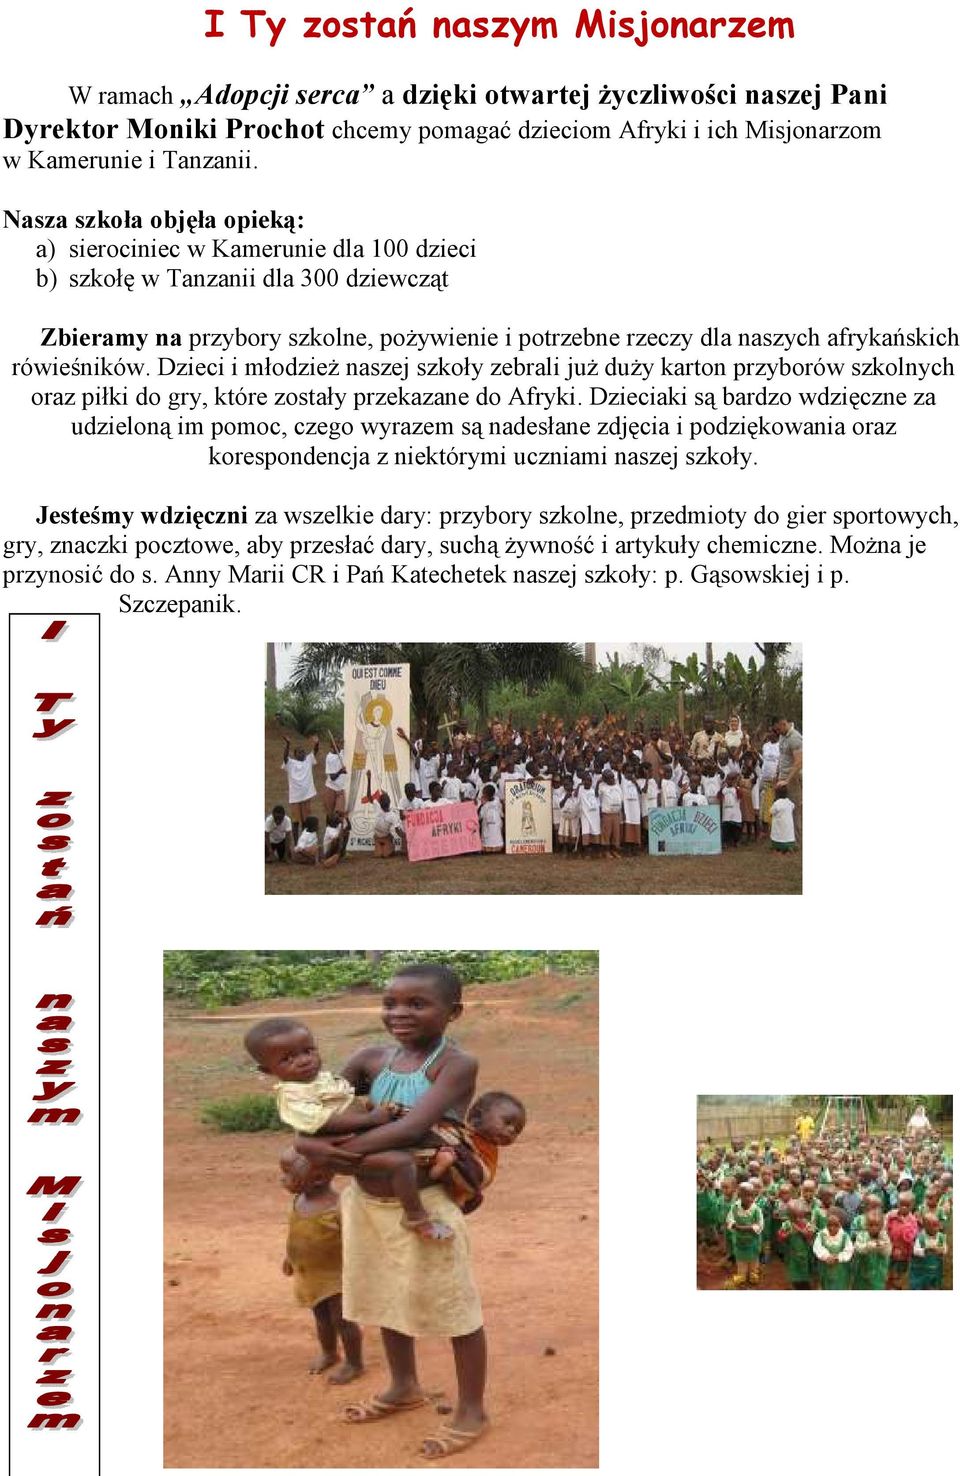 rówieśników. Dzieci i młodzieŝ naszej szkoły zebrali juŝ duŝy karton przyborów szkolnych oraz piłki do gry, które zostały przekazane do Afryki.